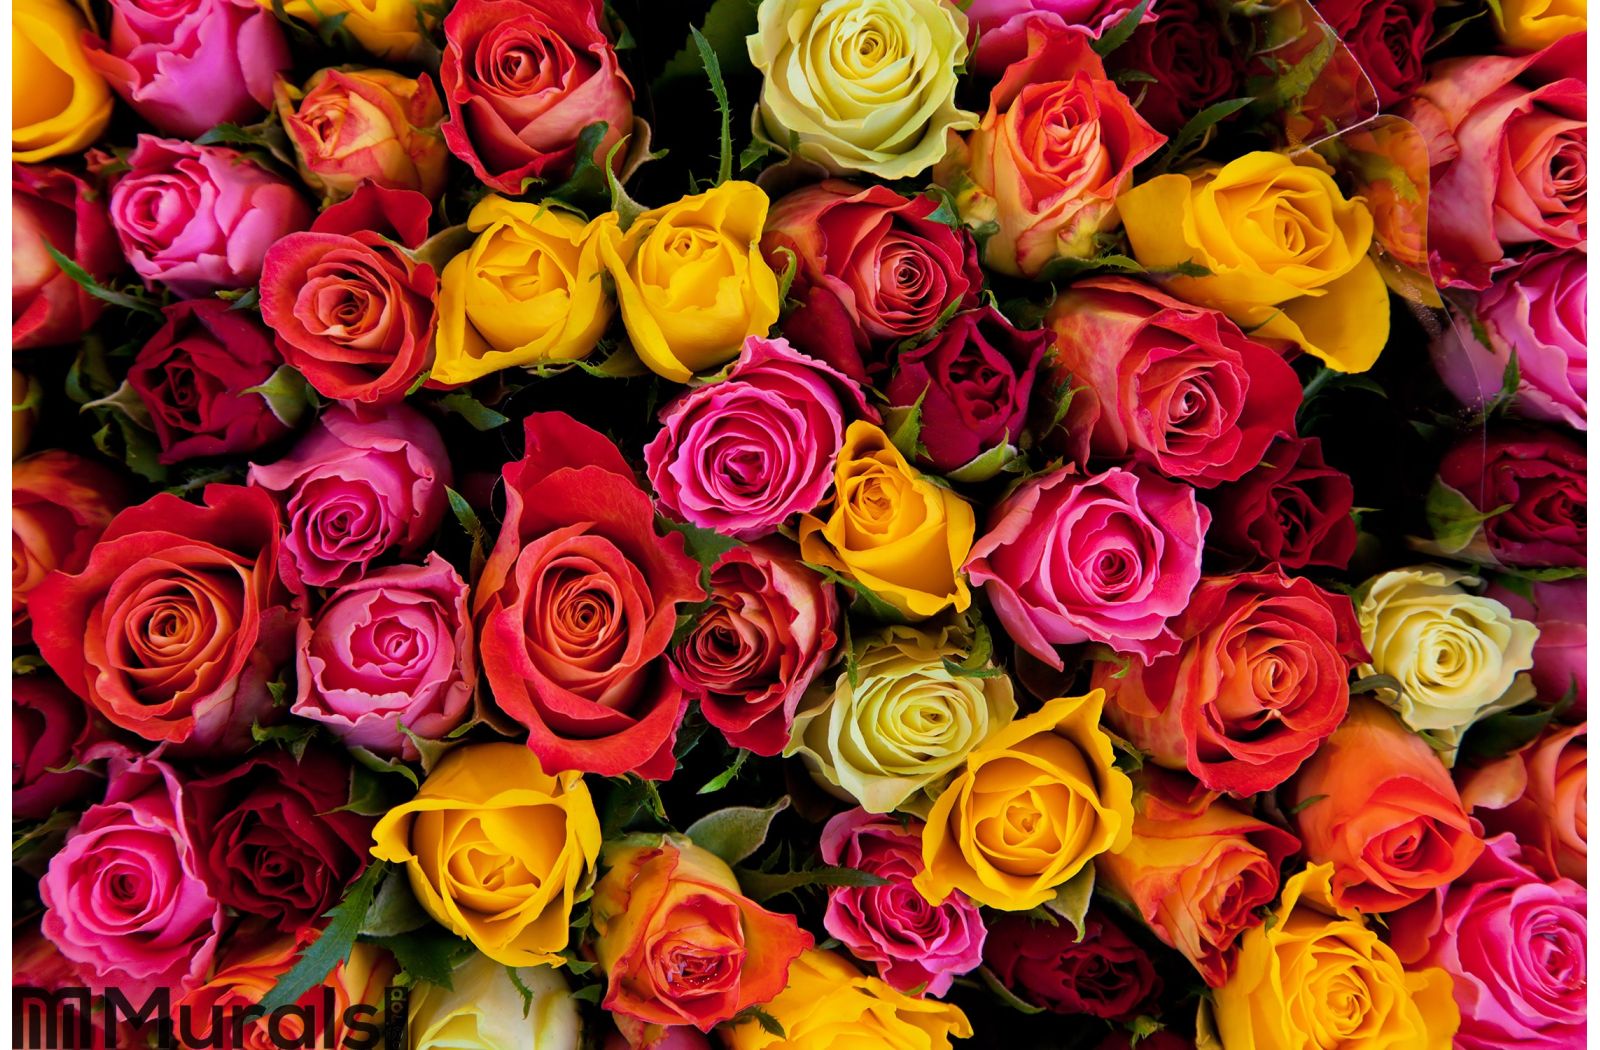 colourful roses wallpaper,flower,rose,flowering plant,garden roses,plant